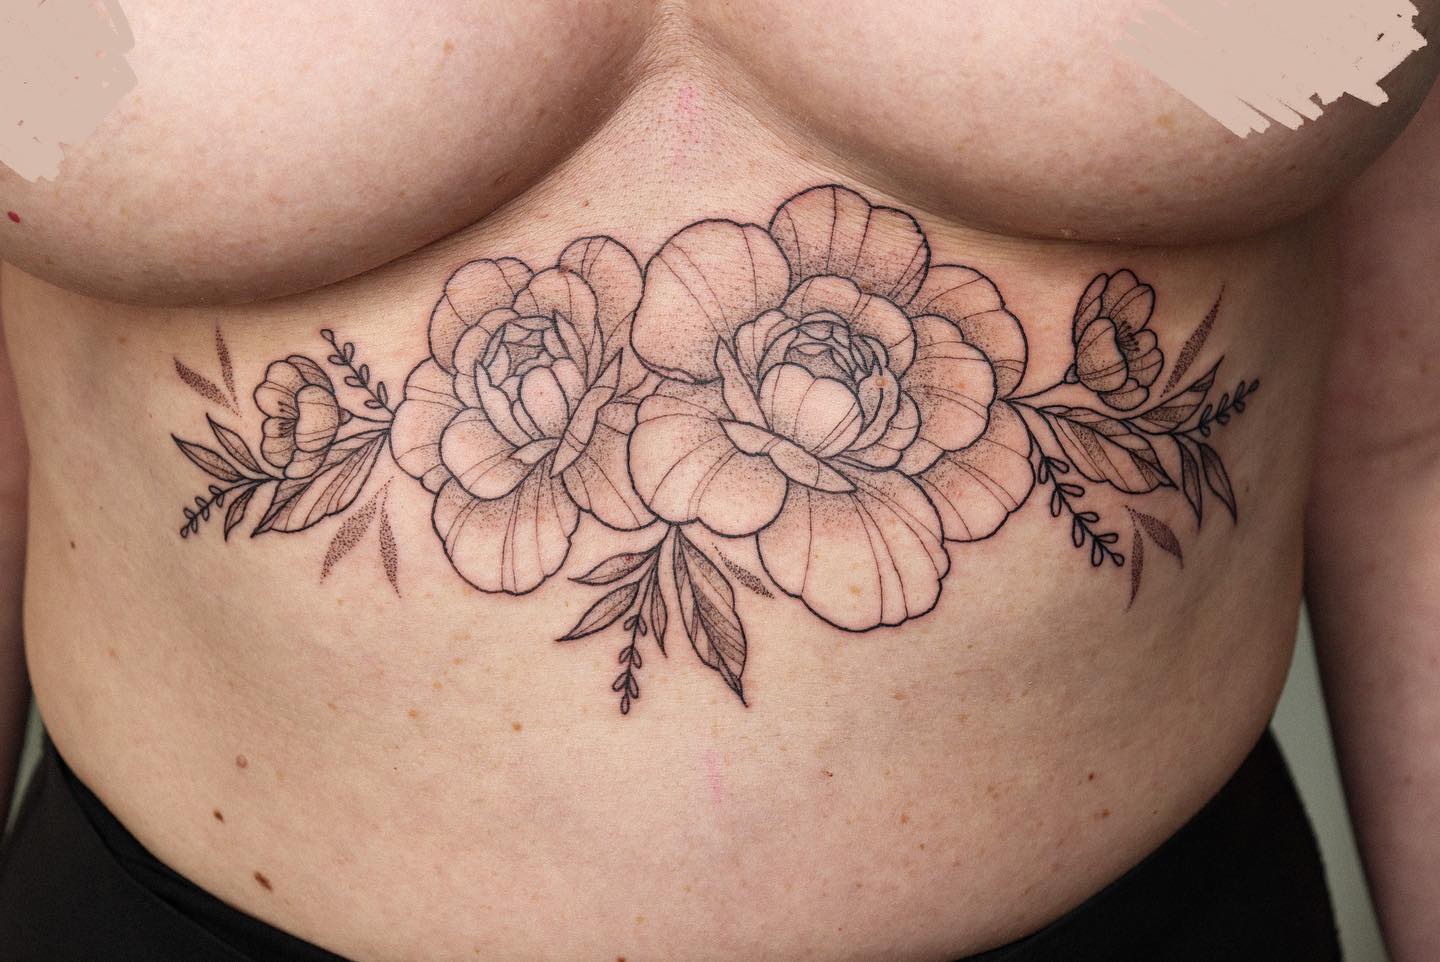 DANKE JULE! 
biiiiitte mehr von solchen motiven  
.
#underboob #tattooideas #tat